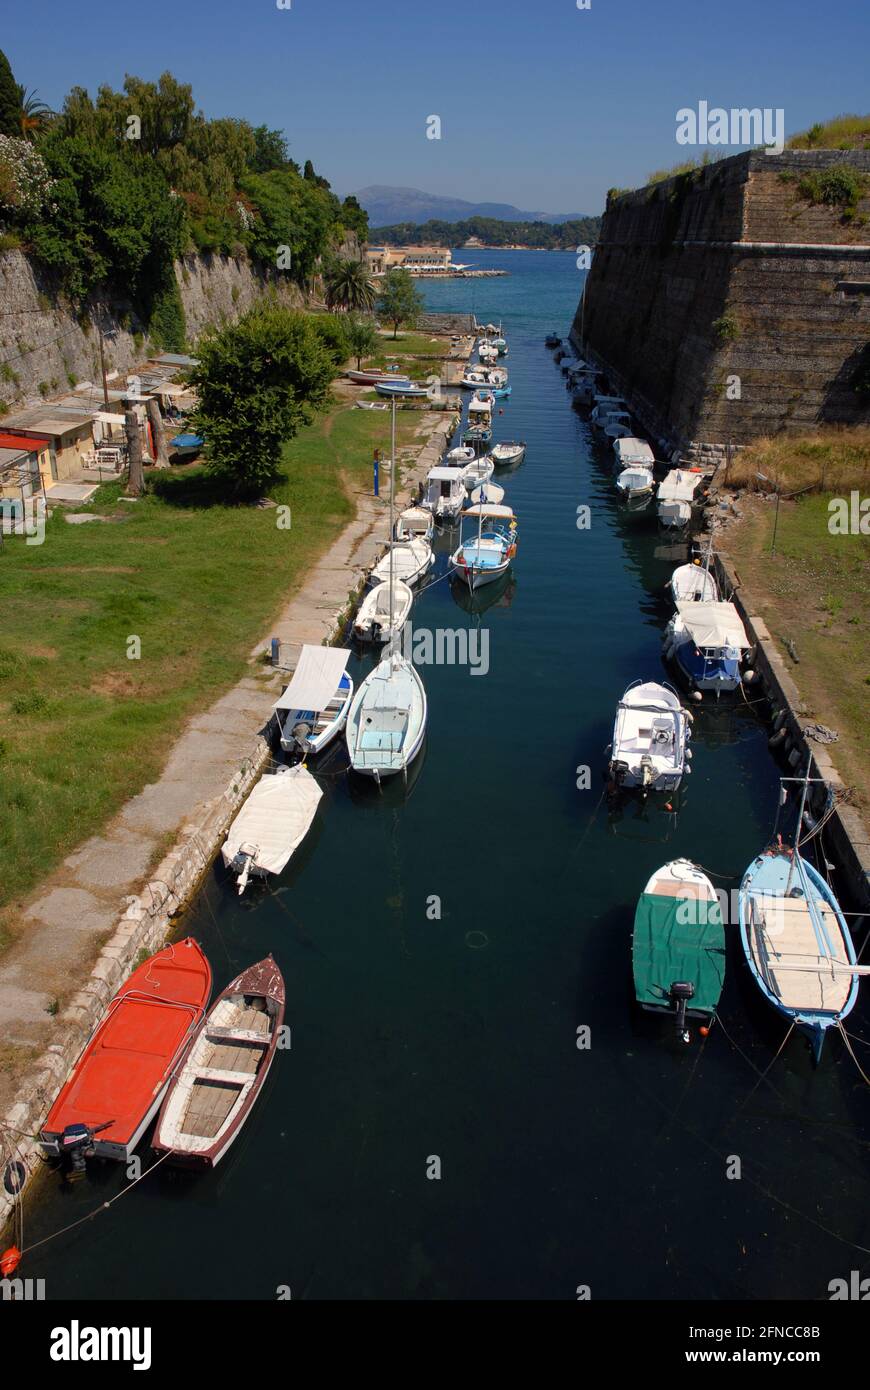 Der Kanal von Contrafossa, ein attraktiver Graben, der eine künstliche Insel bildet, Schiffe mit Booten, die auf beiden Seiten festgemacht wurden, Korfu-Stadt, Korfu, Griechenland Stockfoto